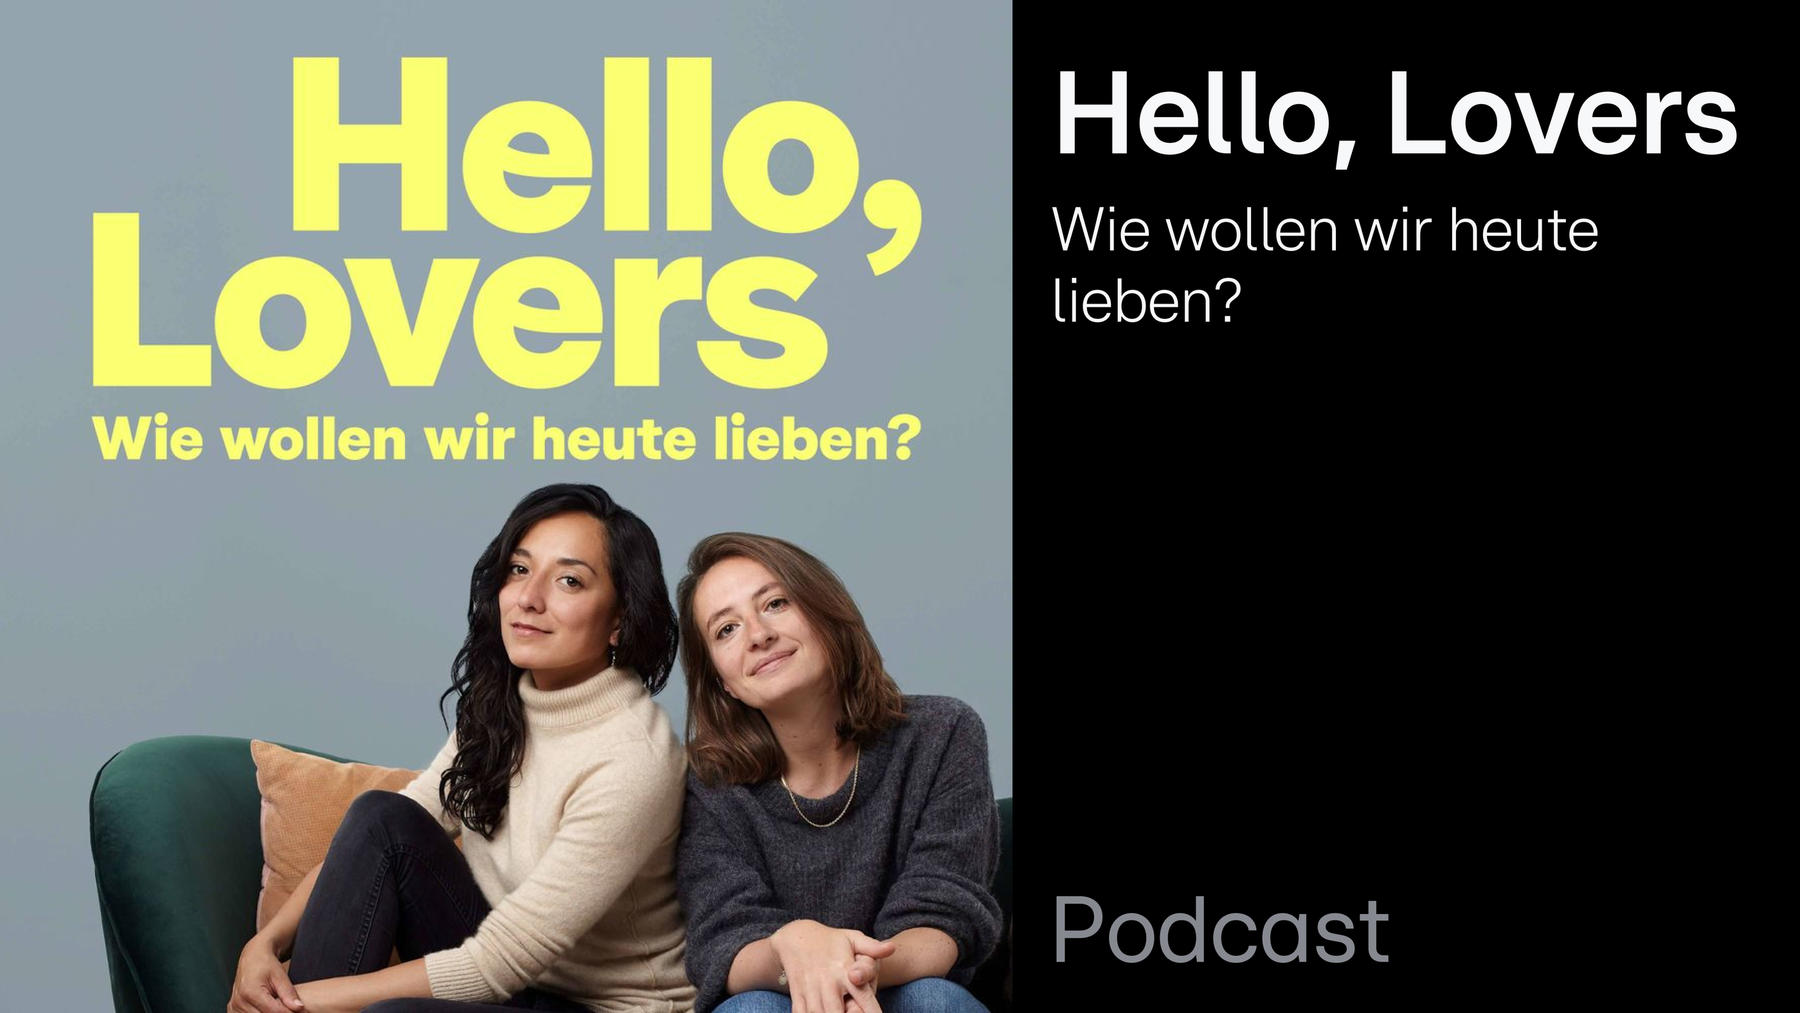 Podcast: Hello, Lovers! Wie wollen wir heute lieben?